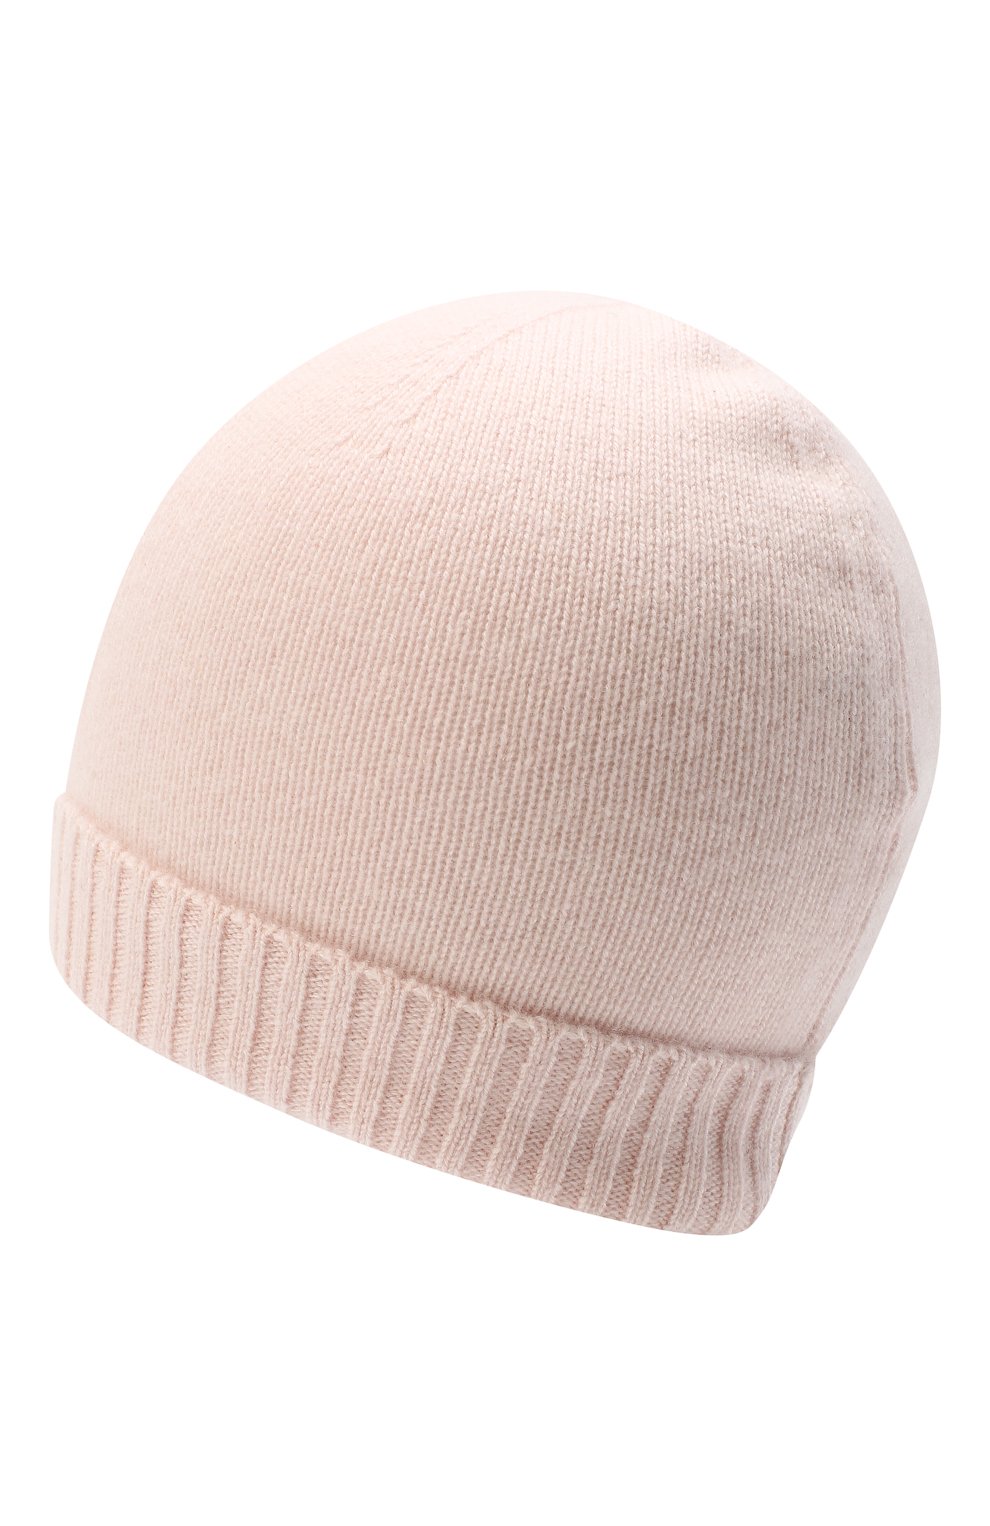 Детского кашемировая шапка OSCAR ET VALENTINE розового цвета, арт. BON02 | Фото 2 (Материал: Текстиль, Кашемир, Шерсть)